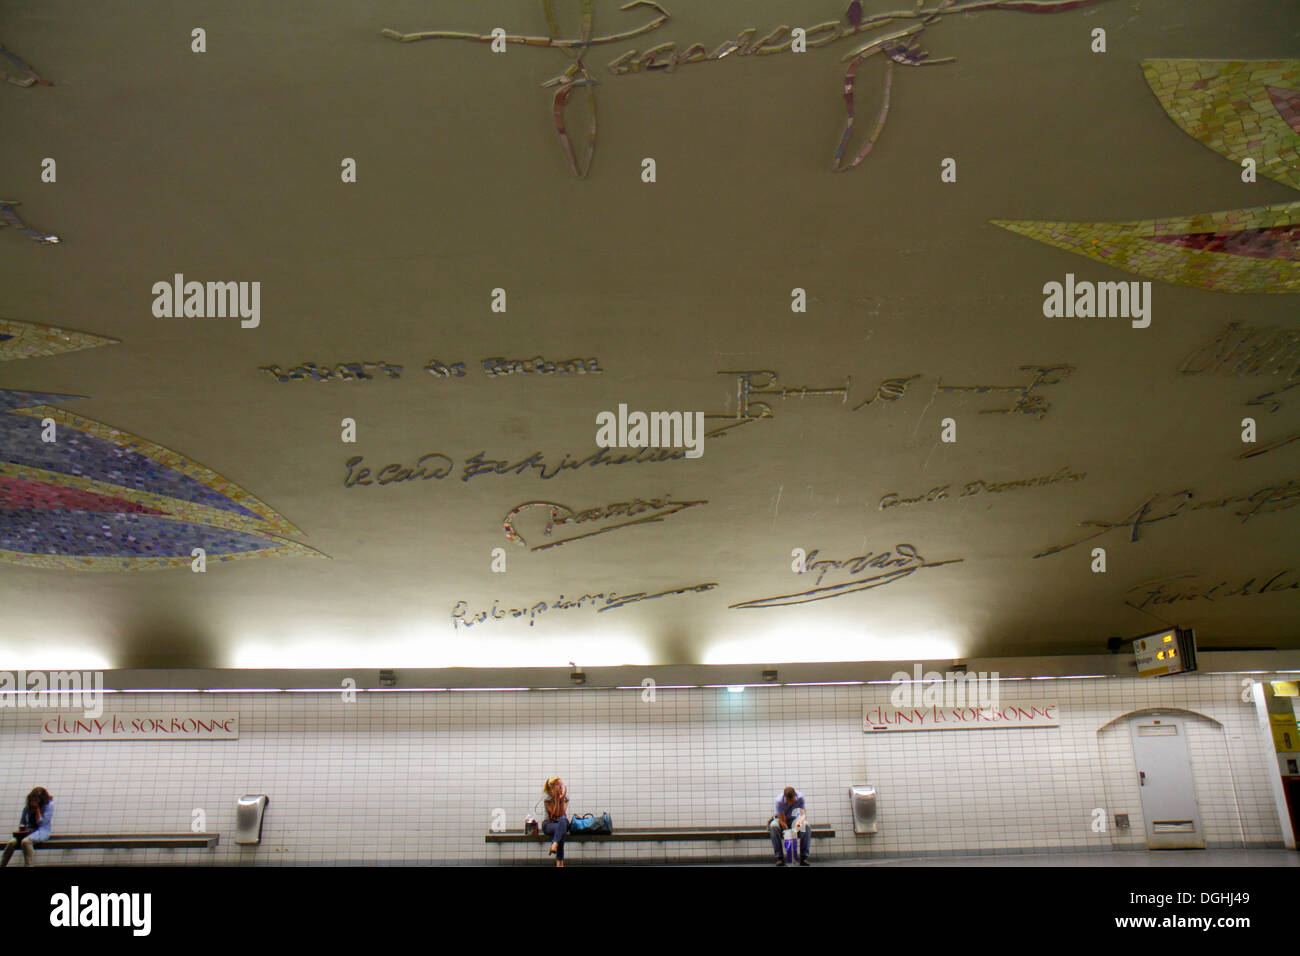 Paris Frankreich, 5. Arrondissement, Bahnhof Cluny La Sorbonne, Linie 10, U-Bahn, Zug, Bahnsteig, gewölbte Decke, Unterschriften, Mosaikfriesenkunst, Frankreich130820013 Stockfoto